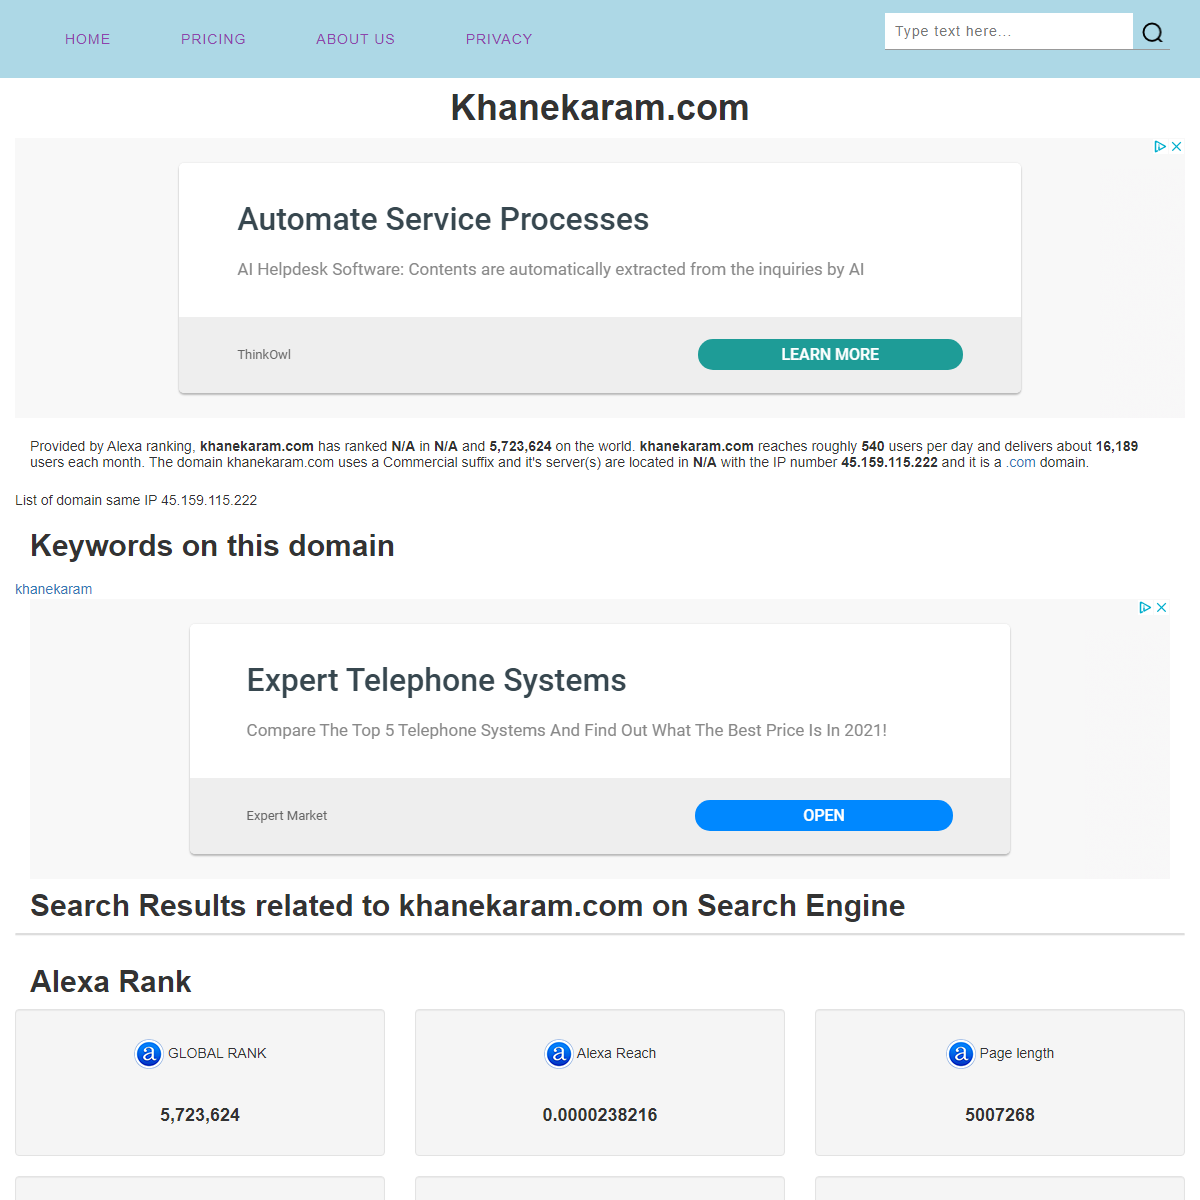 A complete backup of https://www.au-e.com/site/khanekaram.com